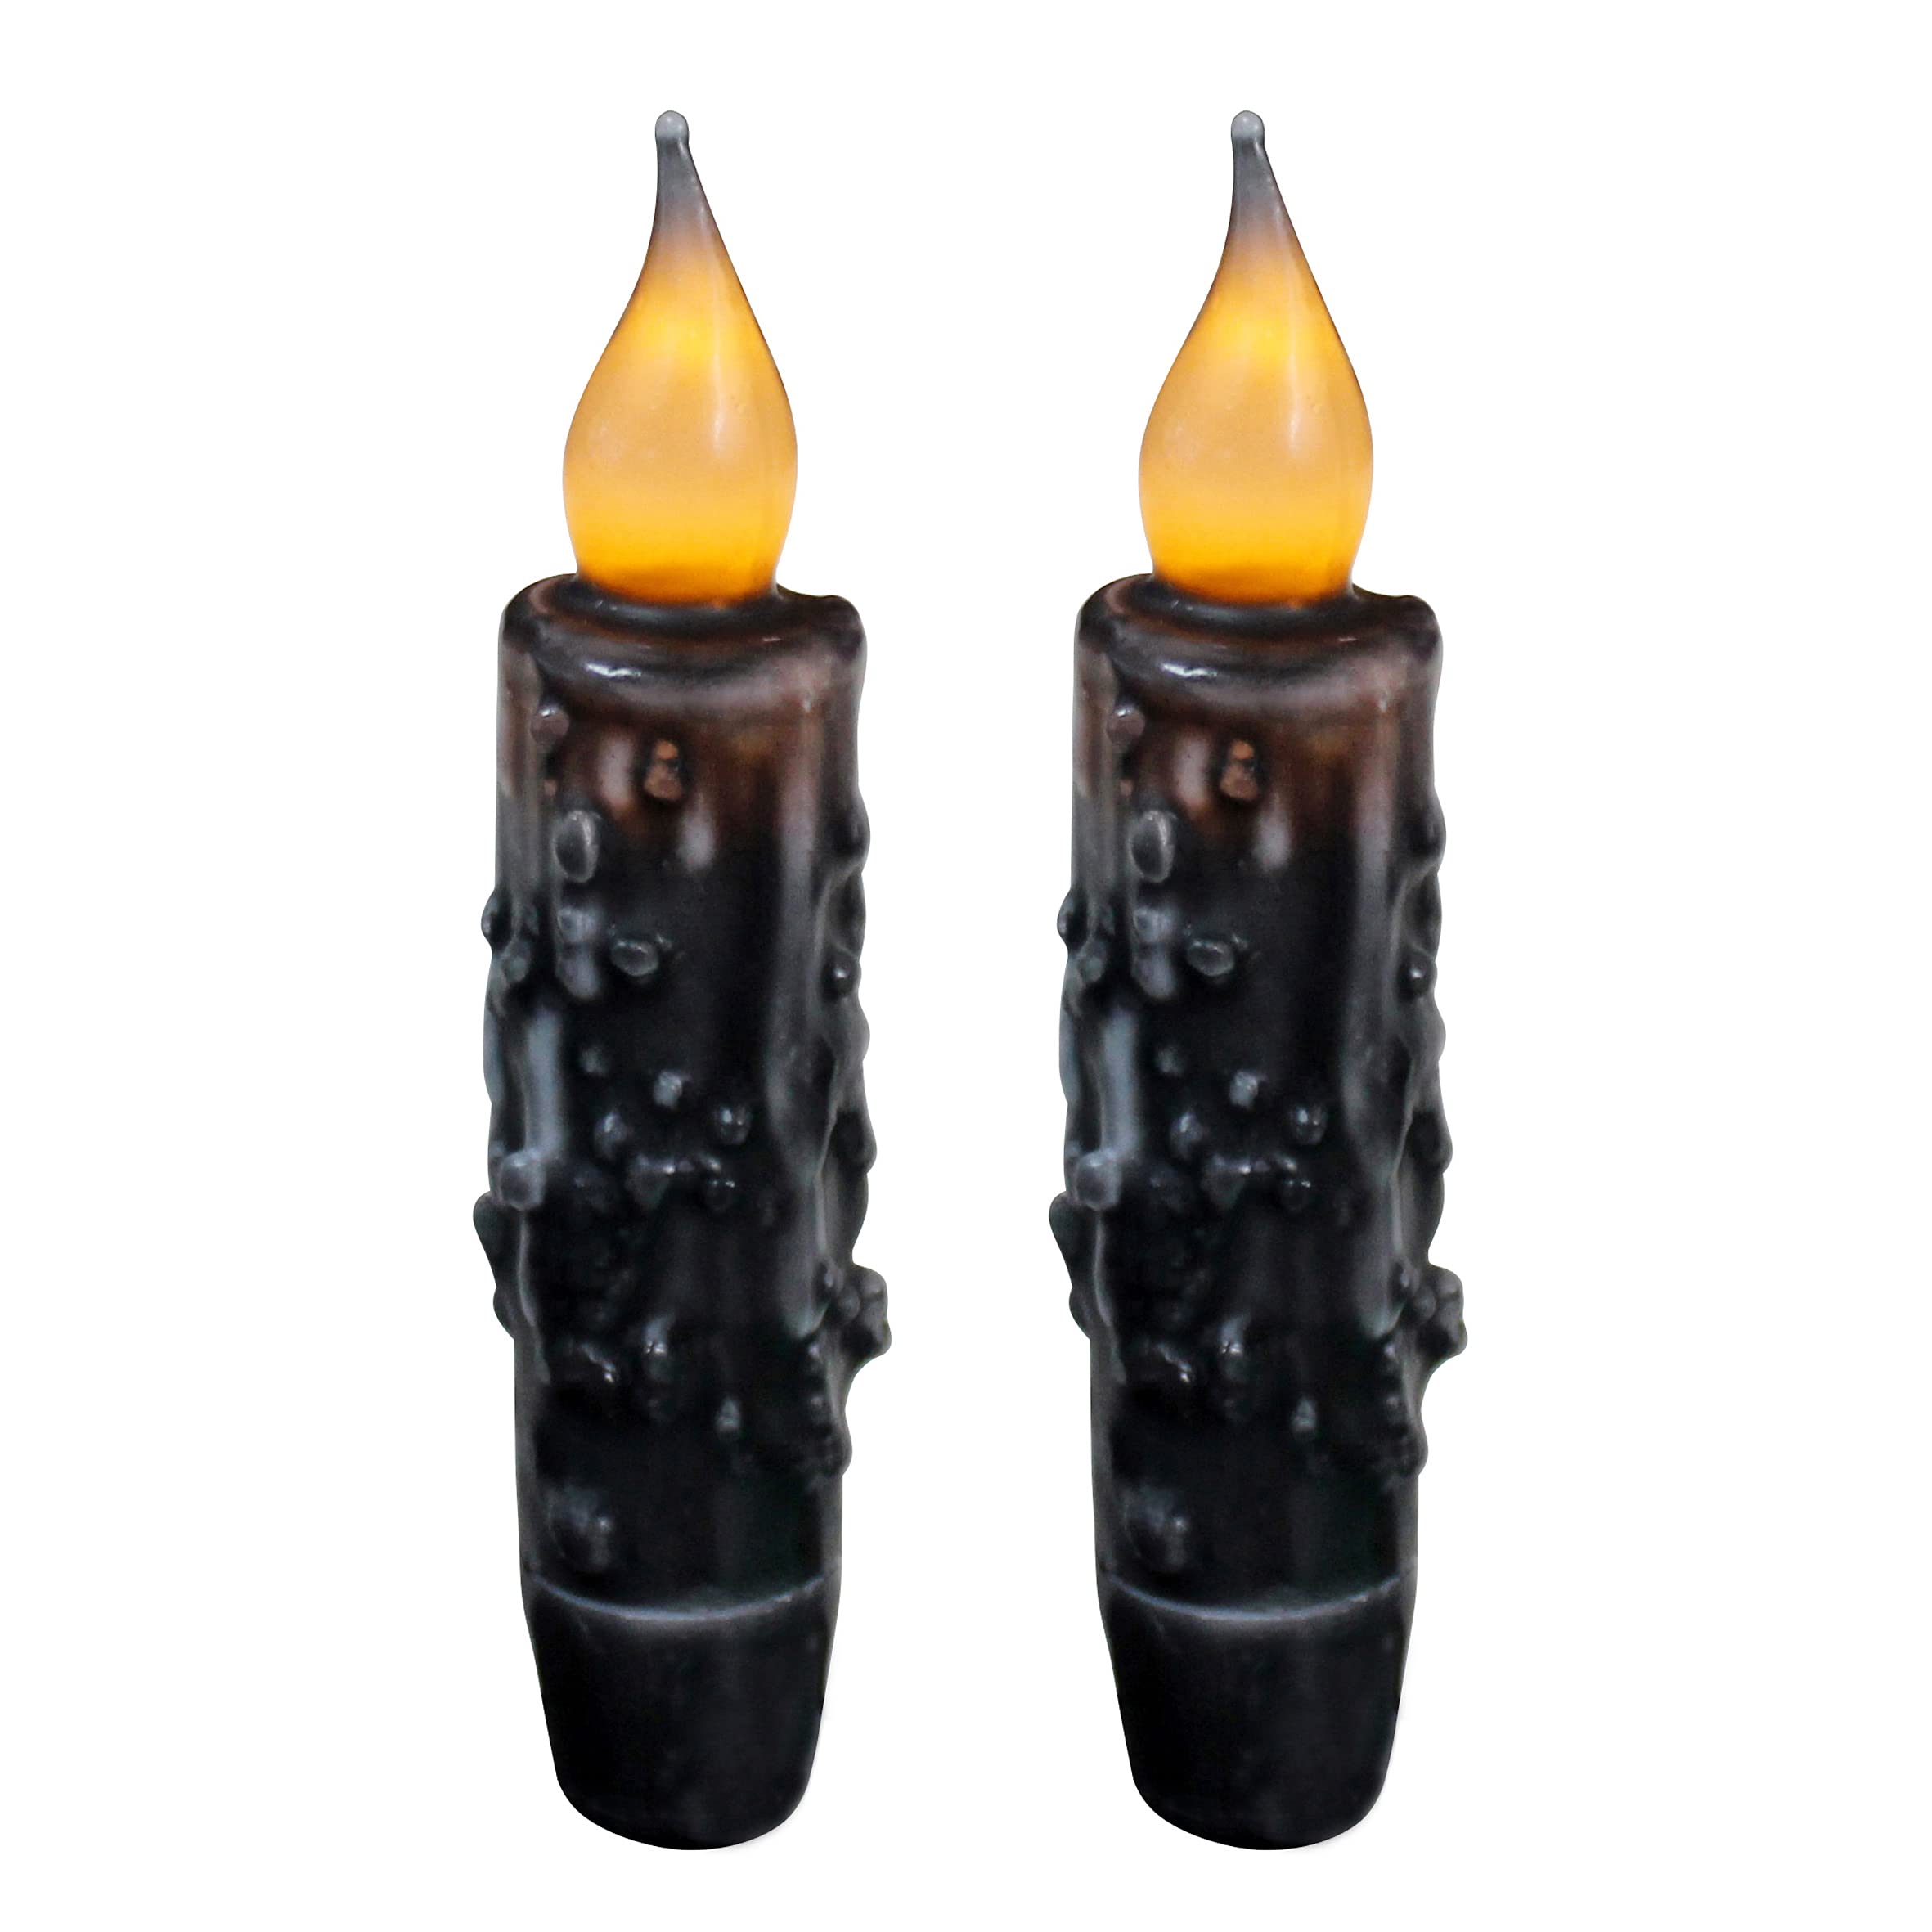 CVHOMEDECO. Echtwachs Hand getauchte batteriebetriebene LED Timer Taper Candles Country Primitive Flameless Lights Dekor, 12 cm, Mattschwarz, 2 Stück in einer Packung